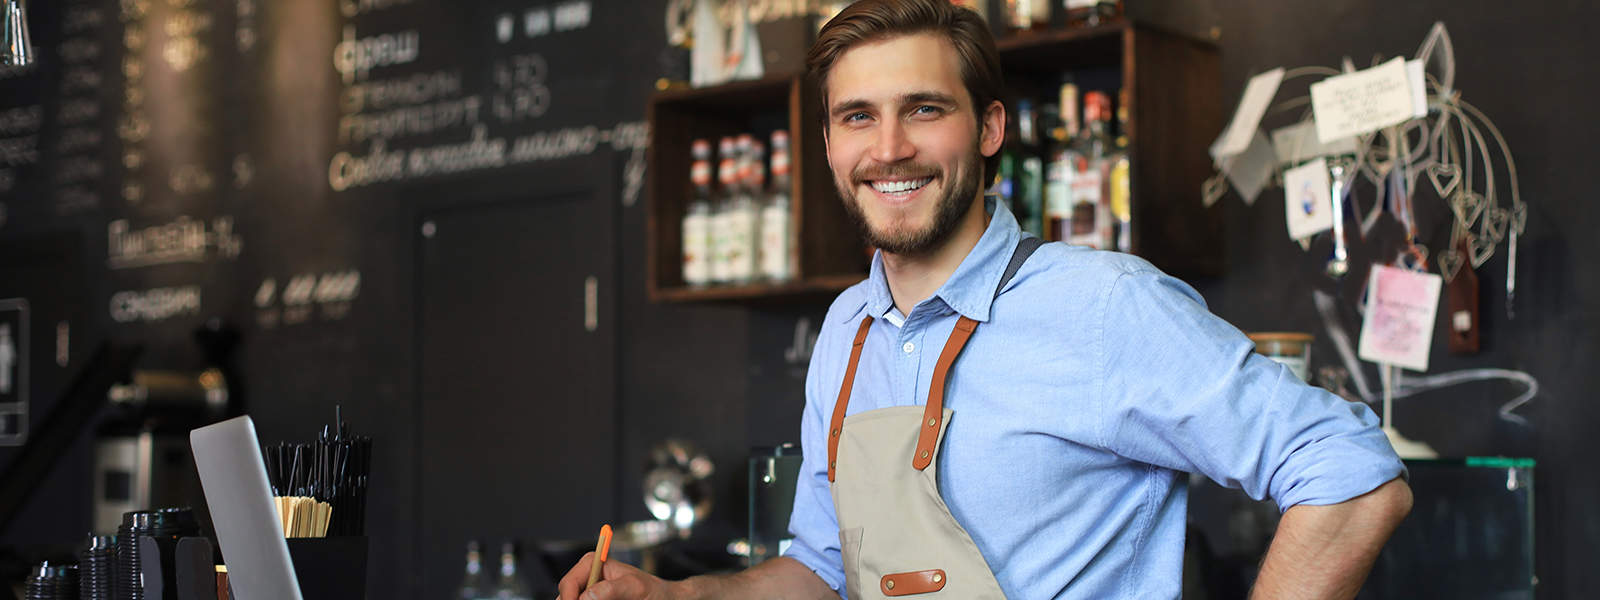 SEO för dig inom restaurangbranschen ökar sannolikheten att du kontinuerligt får nya kunder